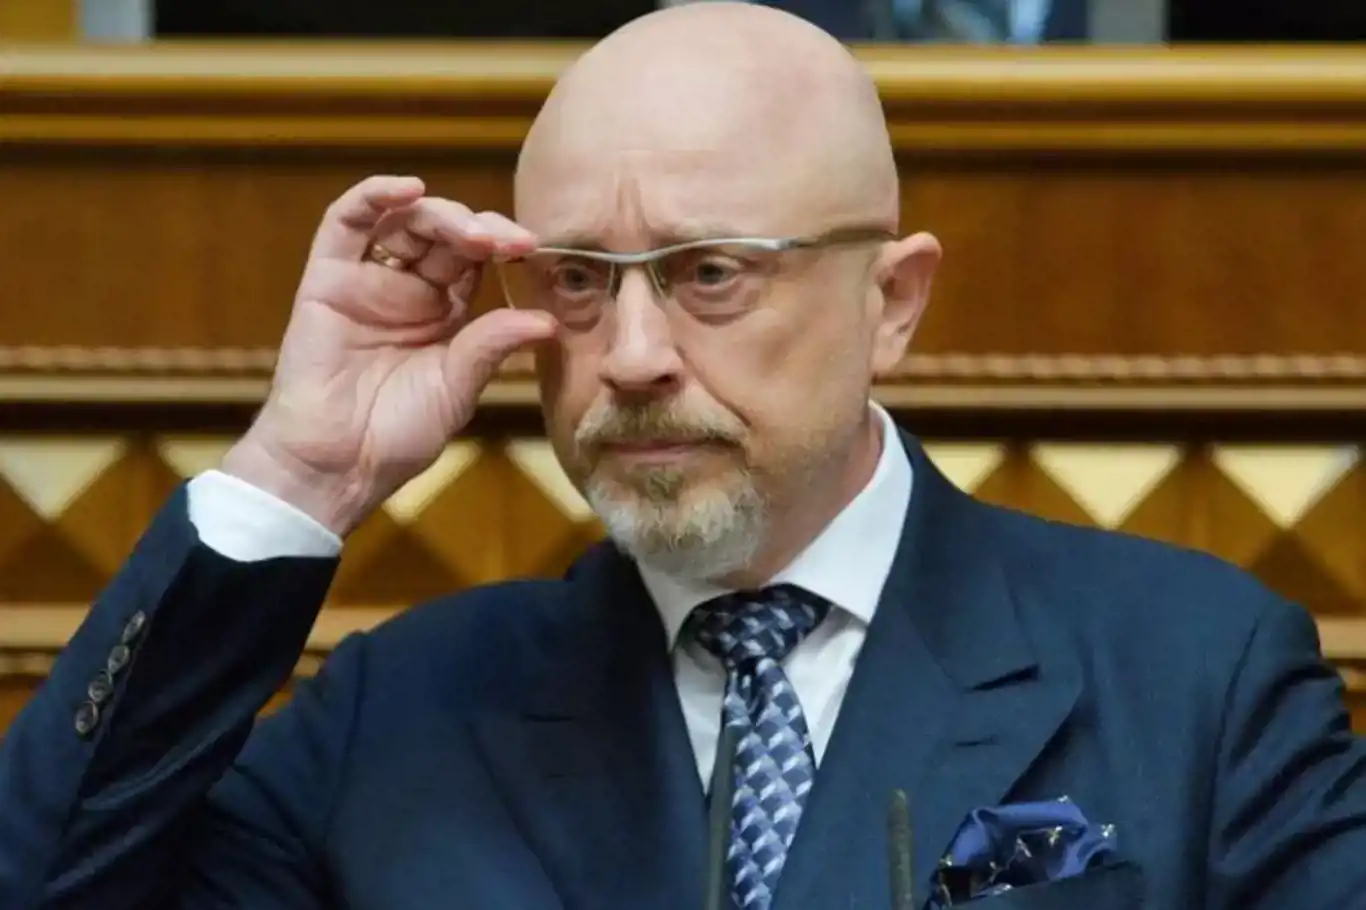 Ukraine's Defense Minister Oleksii Reznikov dismissed, Rustem Umerov nominated as successor